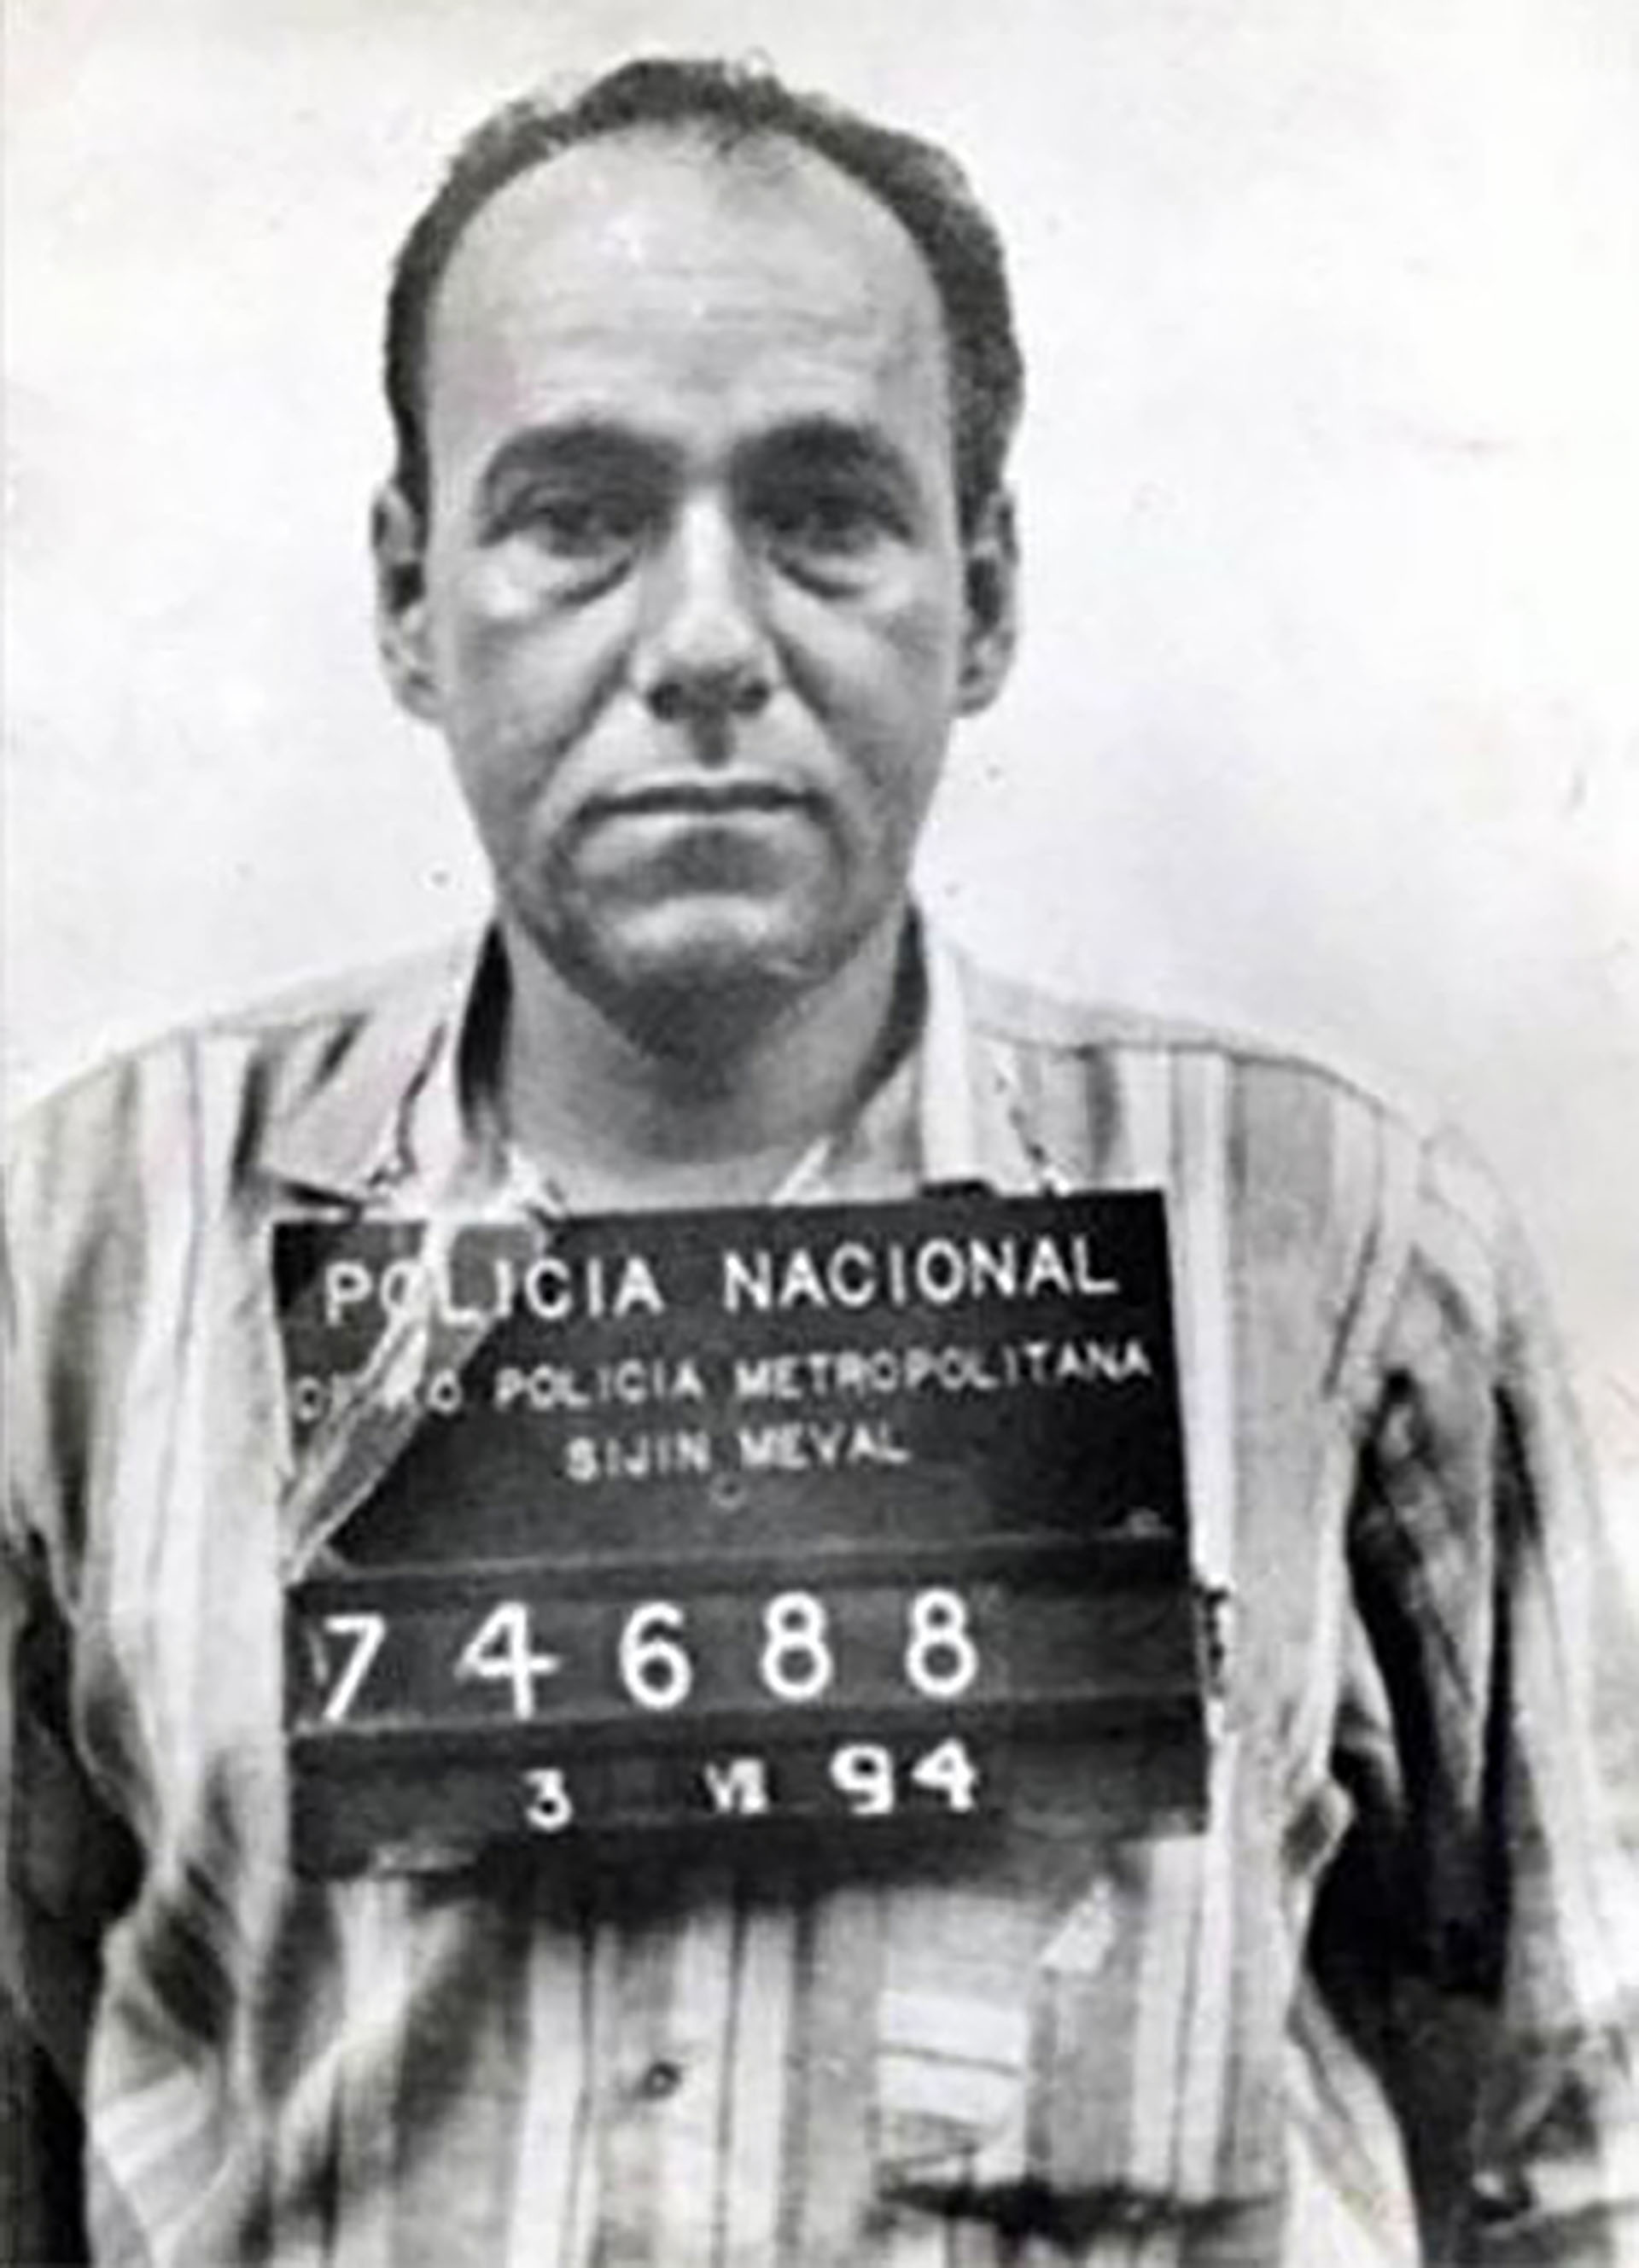 Humberto Muñ+oz Castro, conductor de los narcotraficantes David y Santiago Gallón Henao, confesó el asesinato al futbolista Andres Escobar